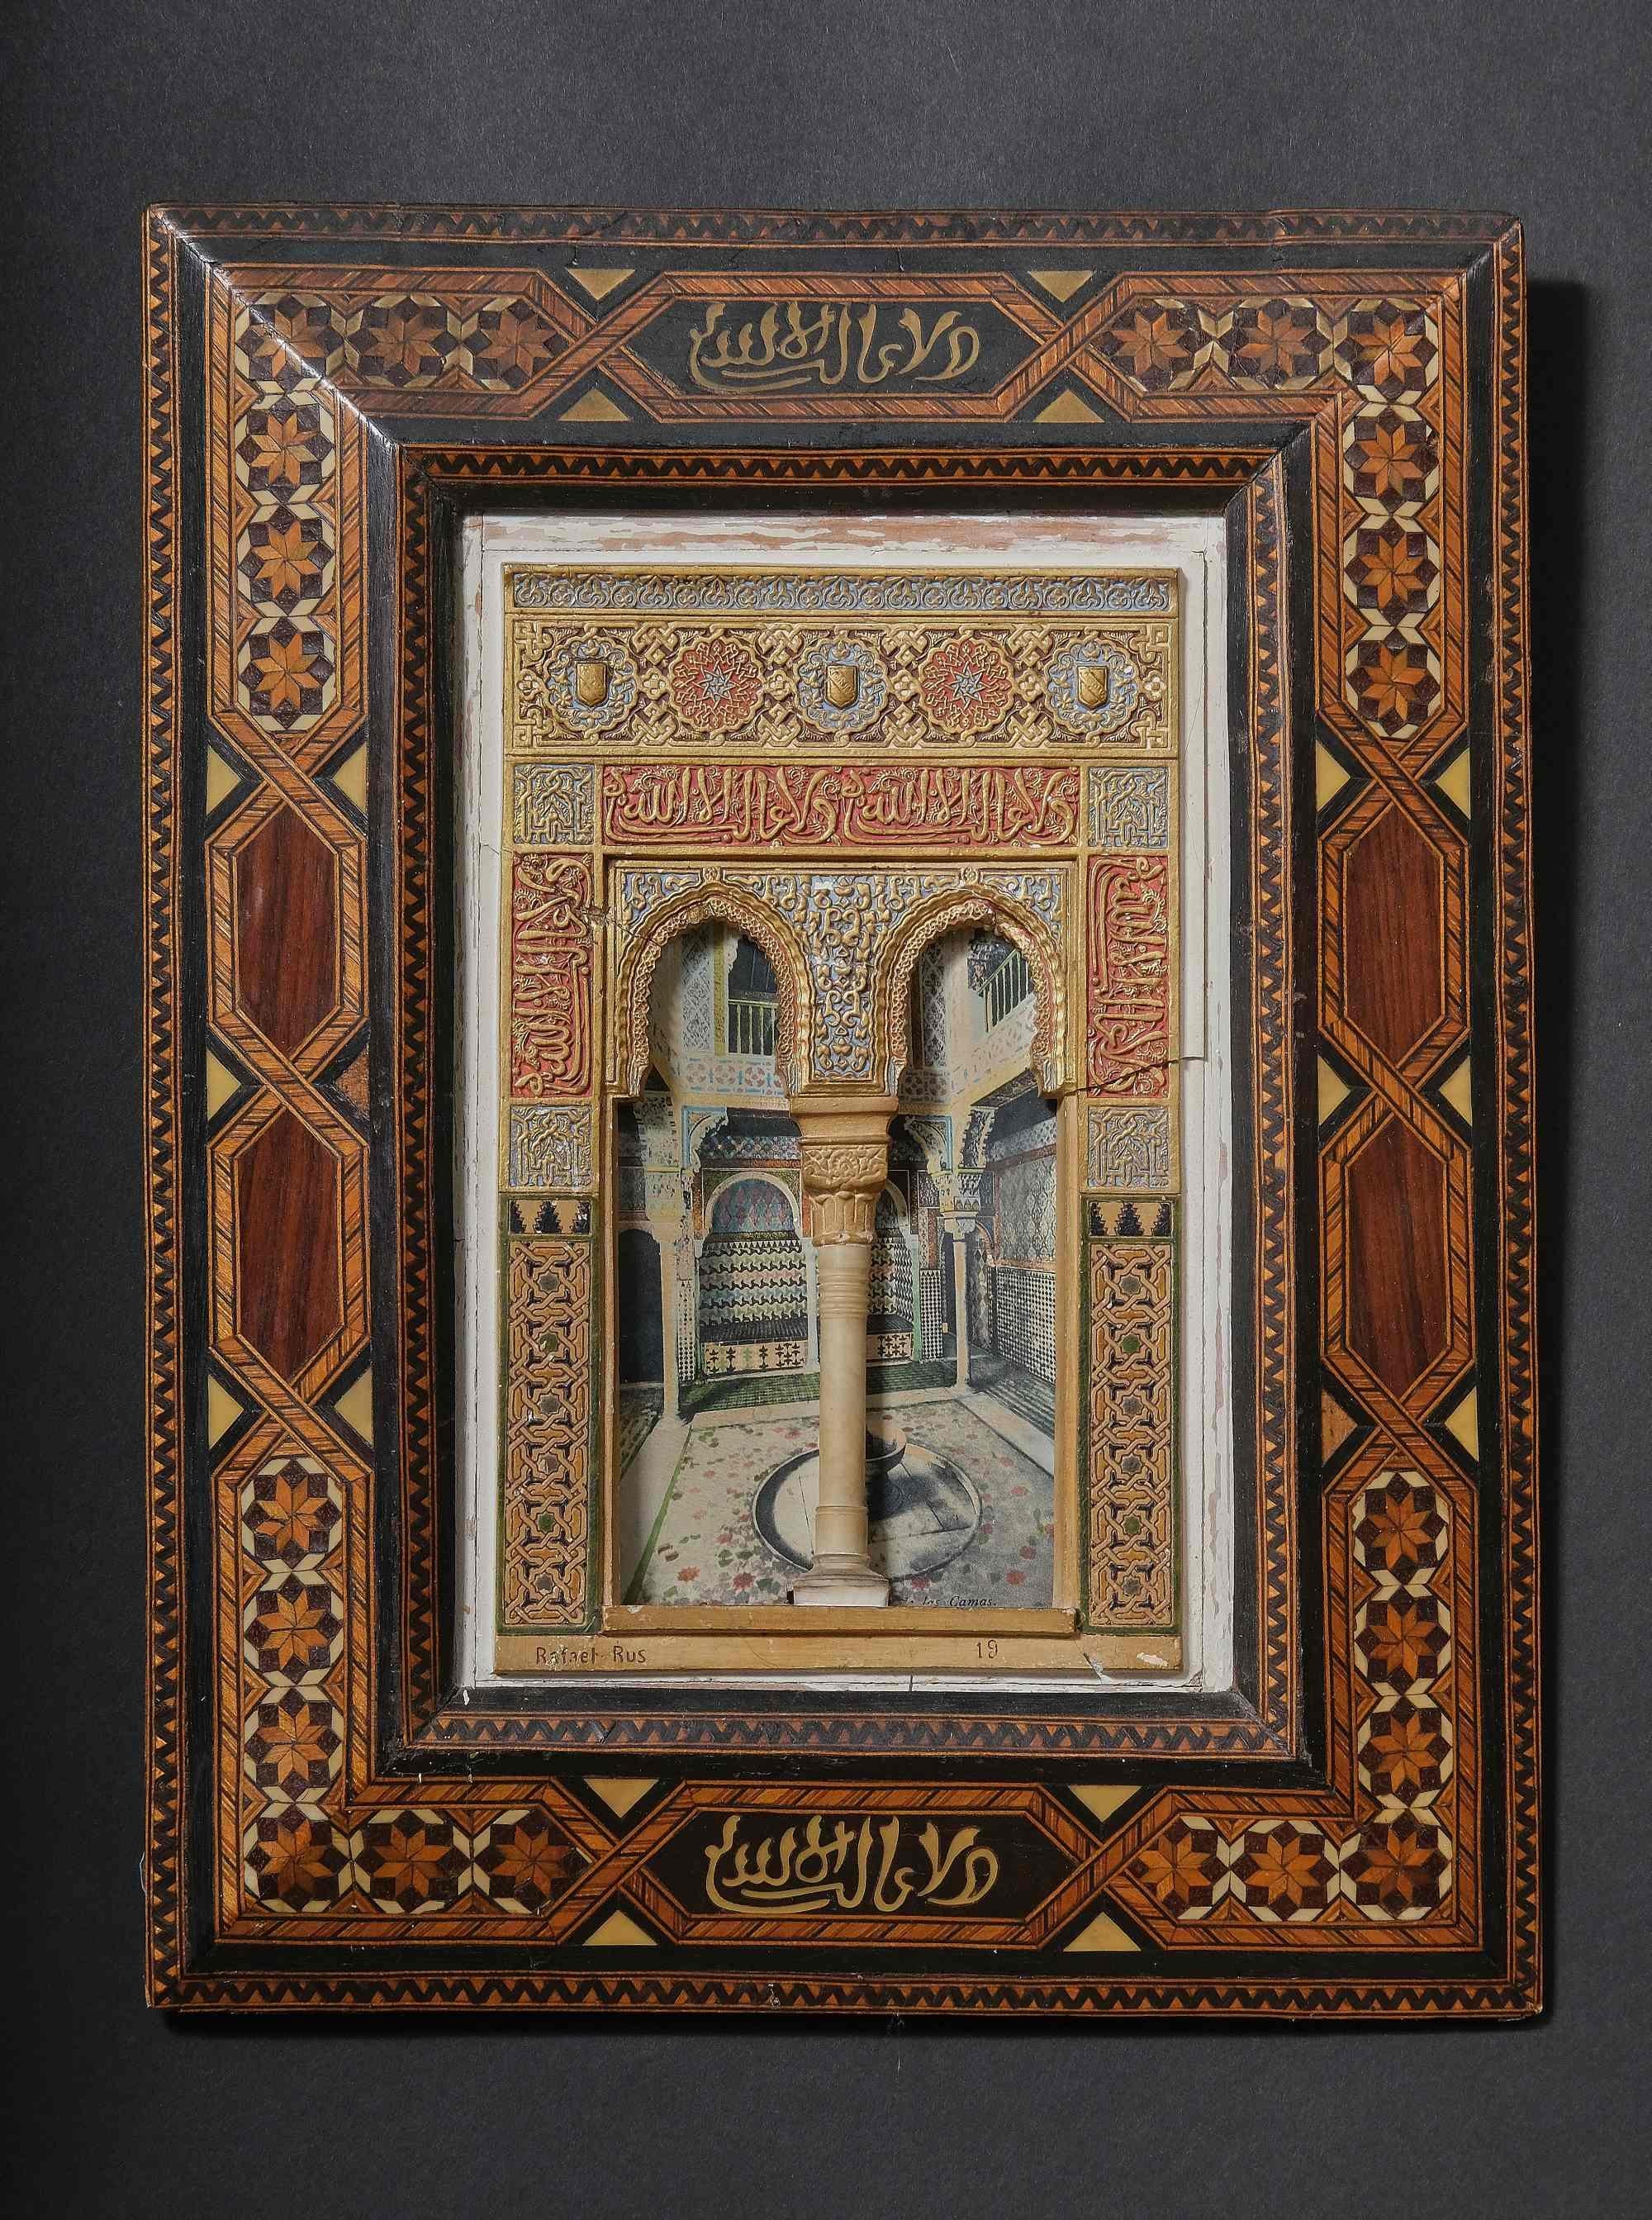 Paire de plaques de façade de l'Alhambra dans un magnifique cadre de style arabe. Signé 